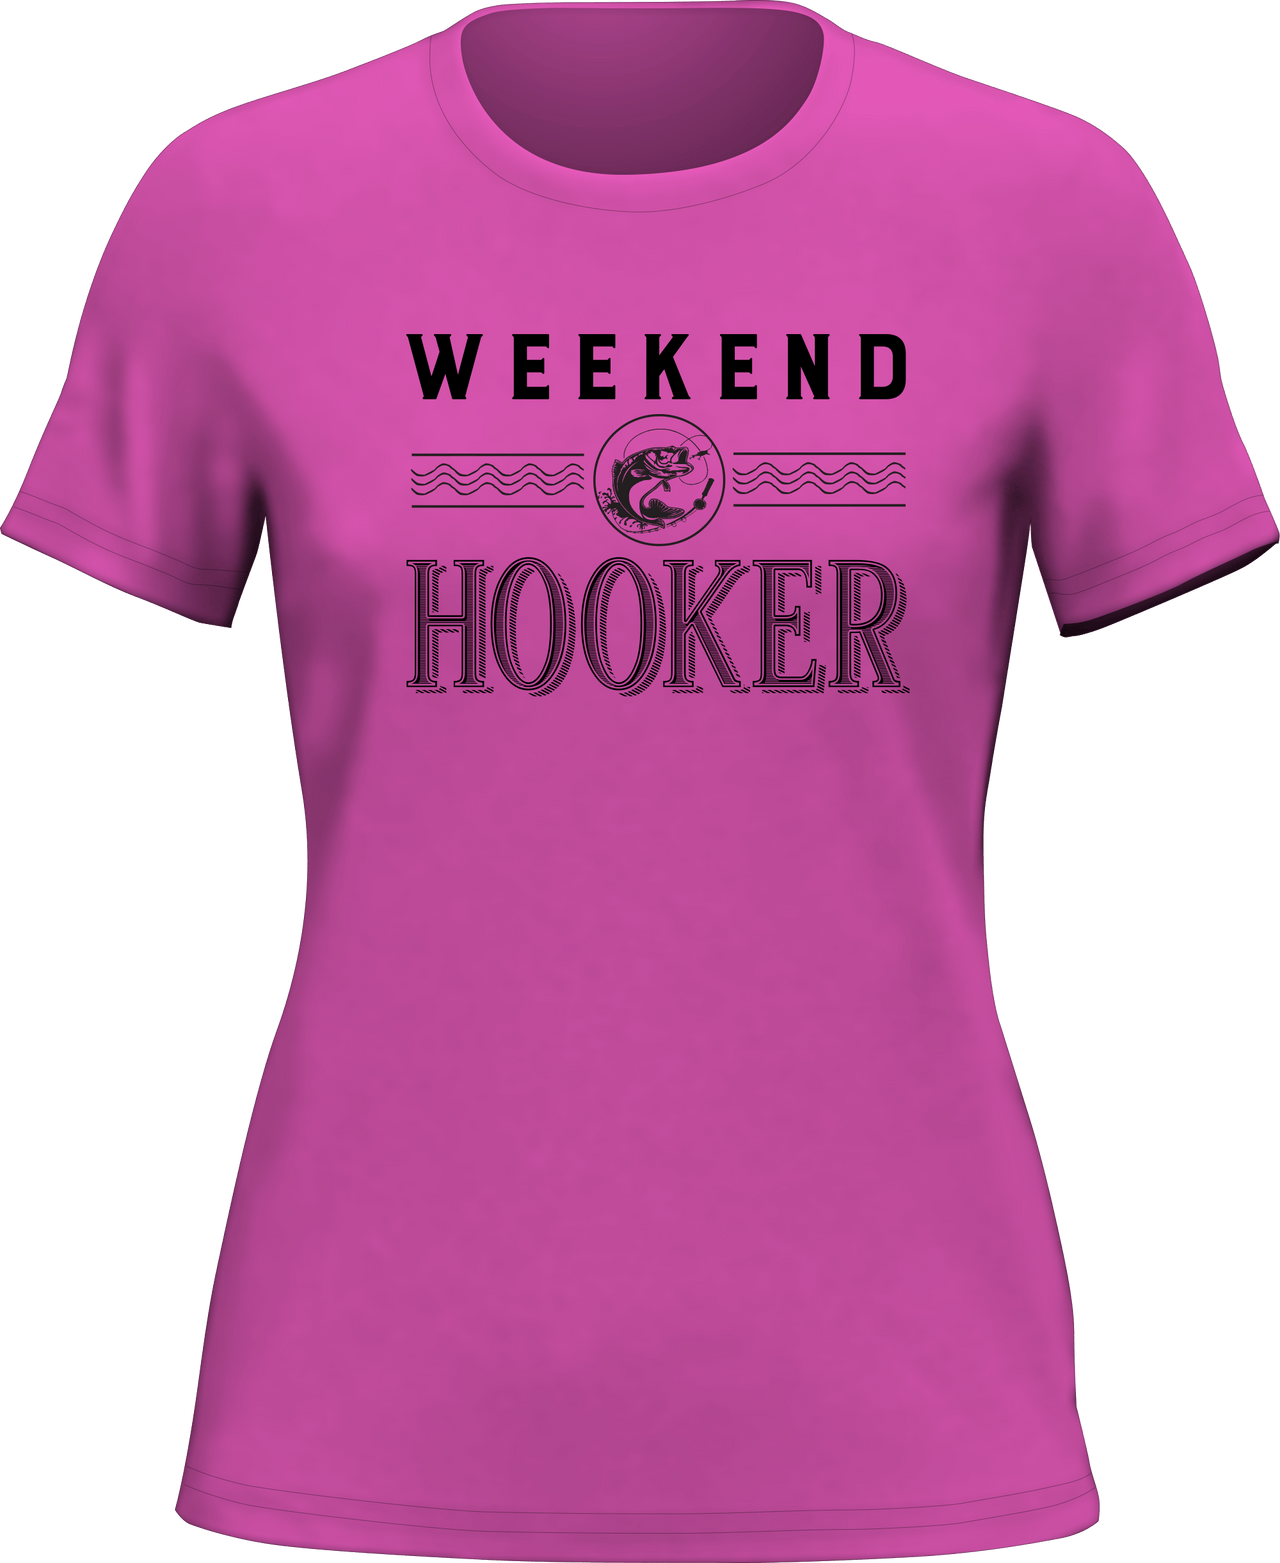 Weekend Hooker T-Shirt for Women